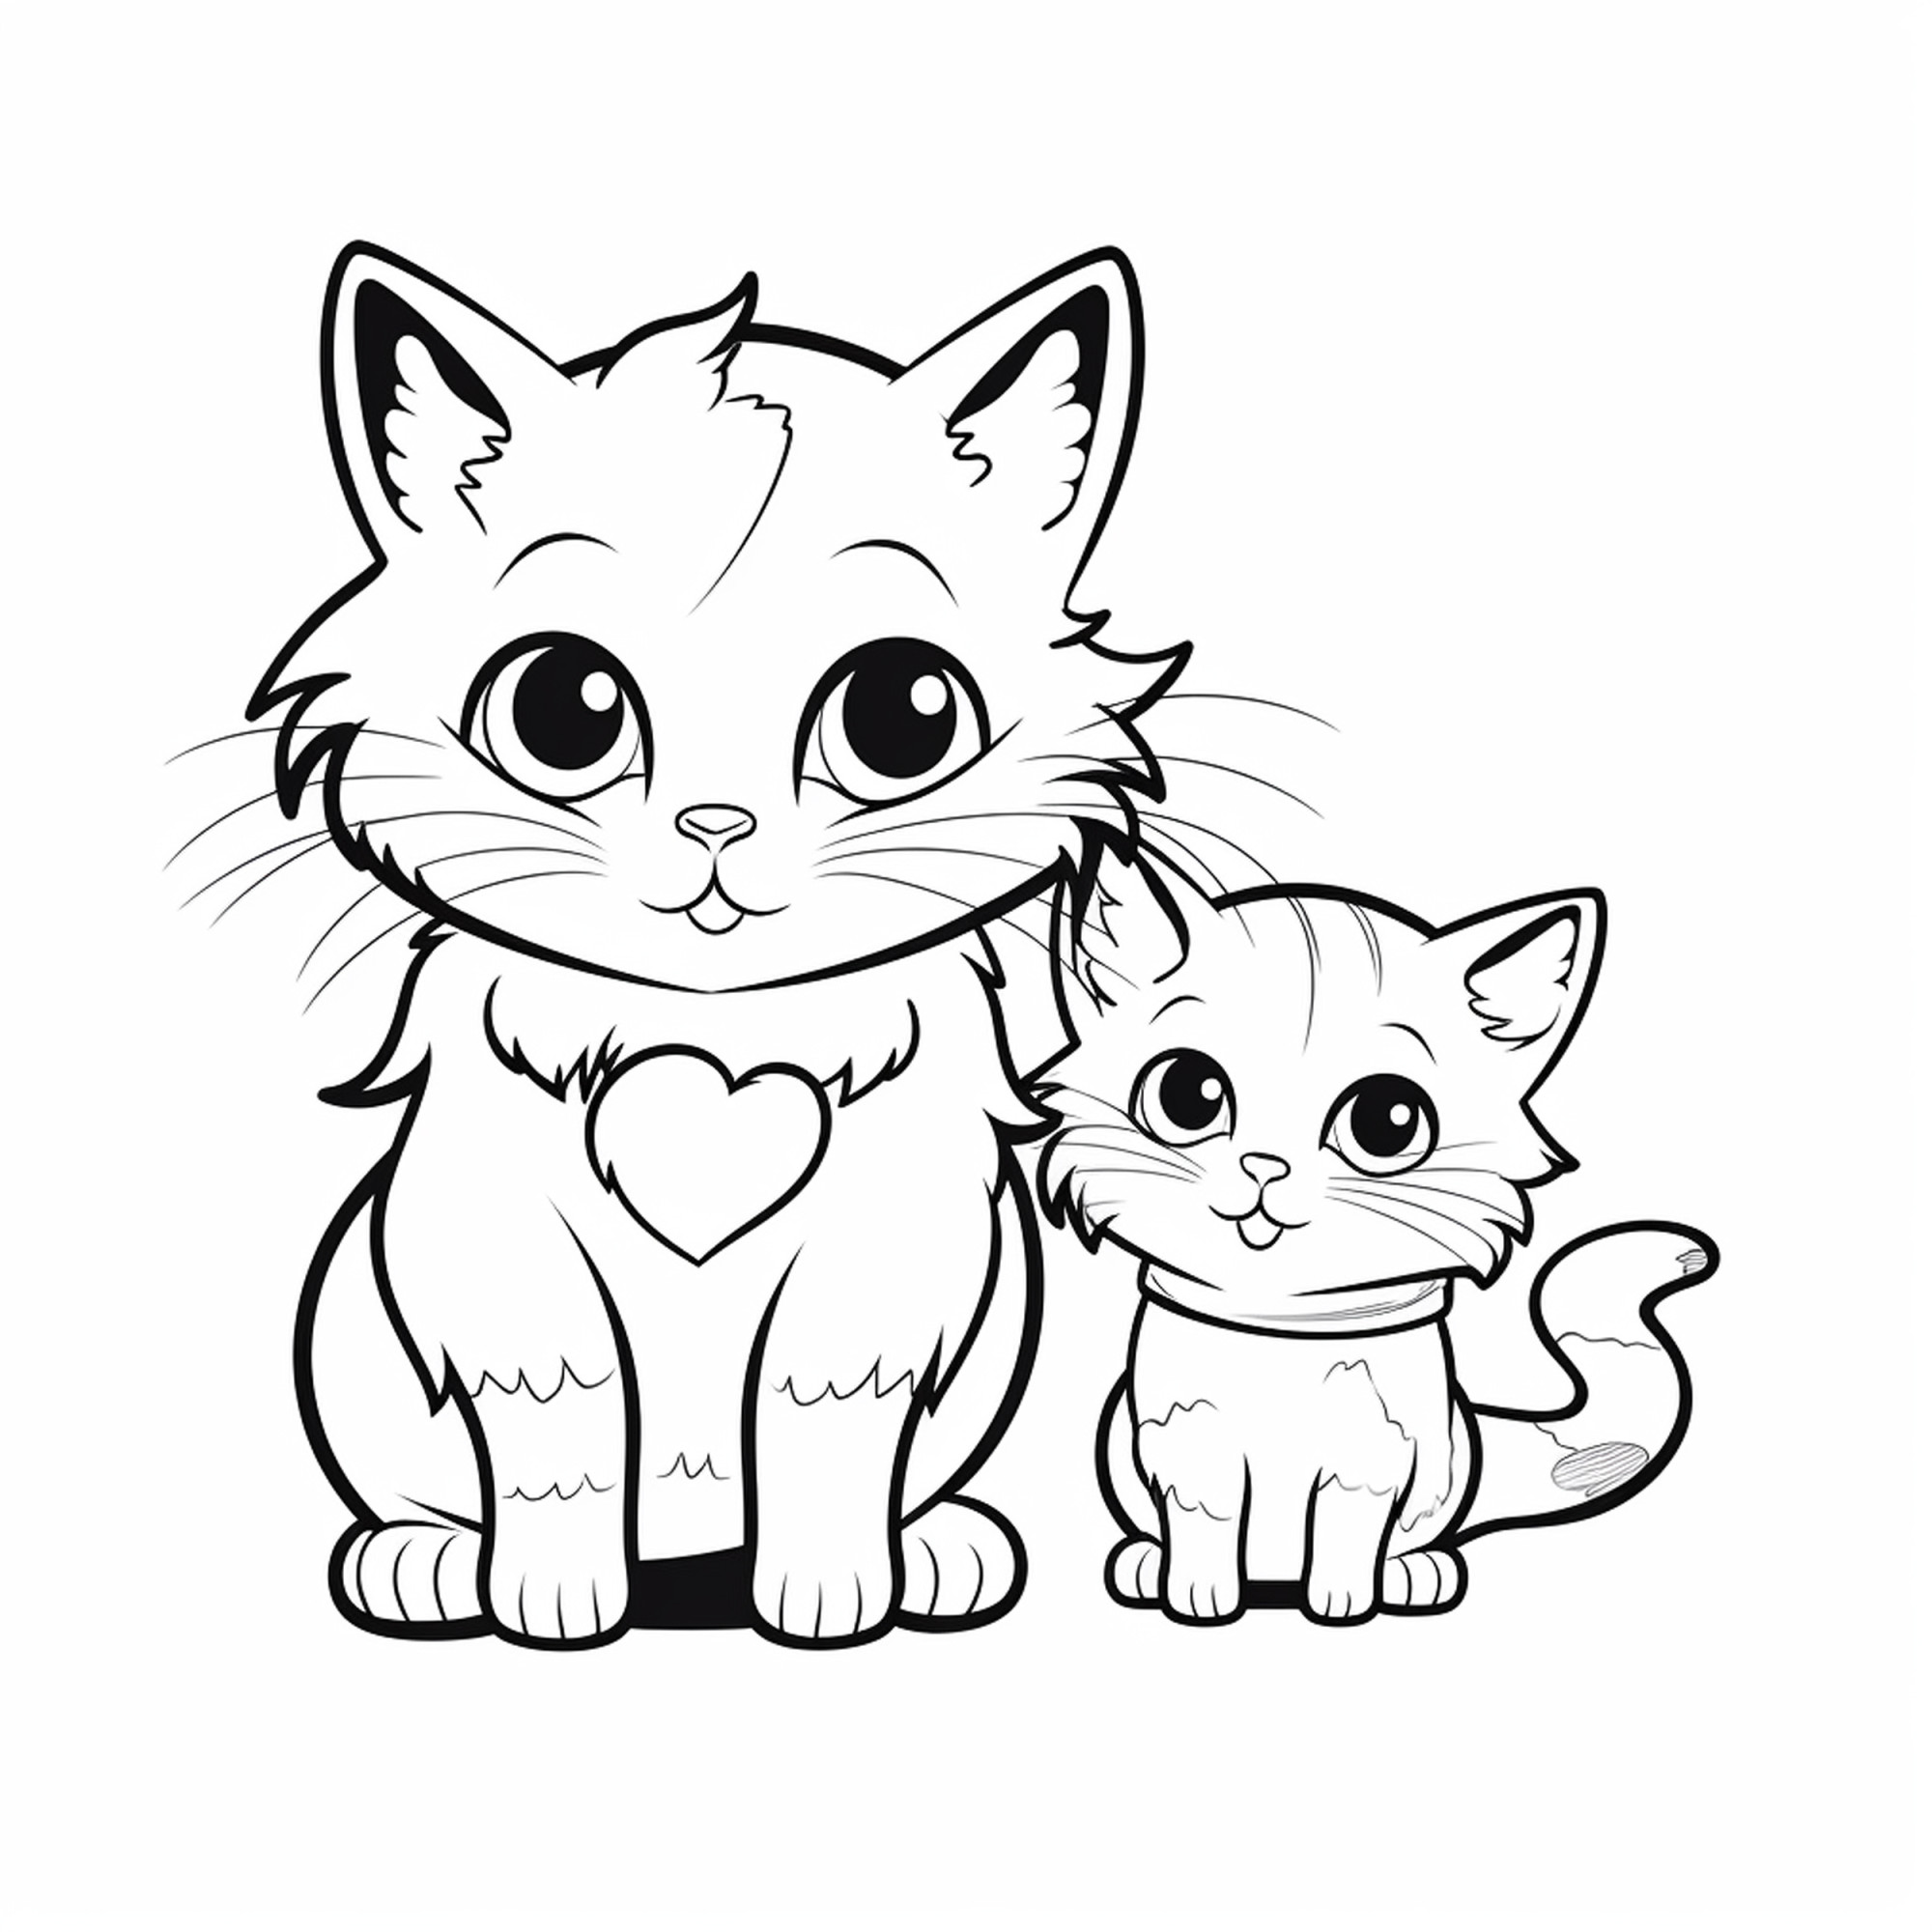 Раскраска для детей: кошка и котенок